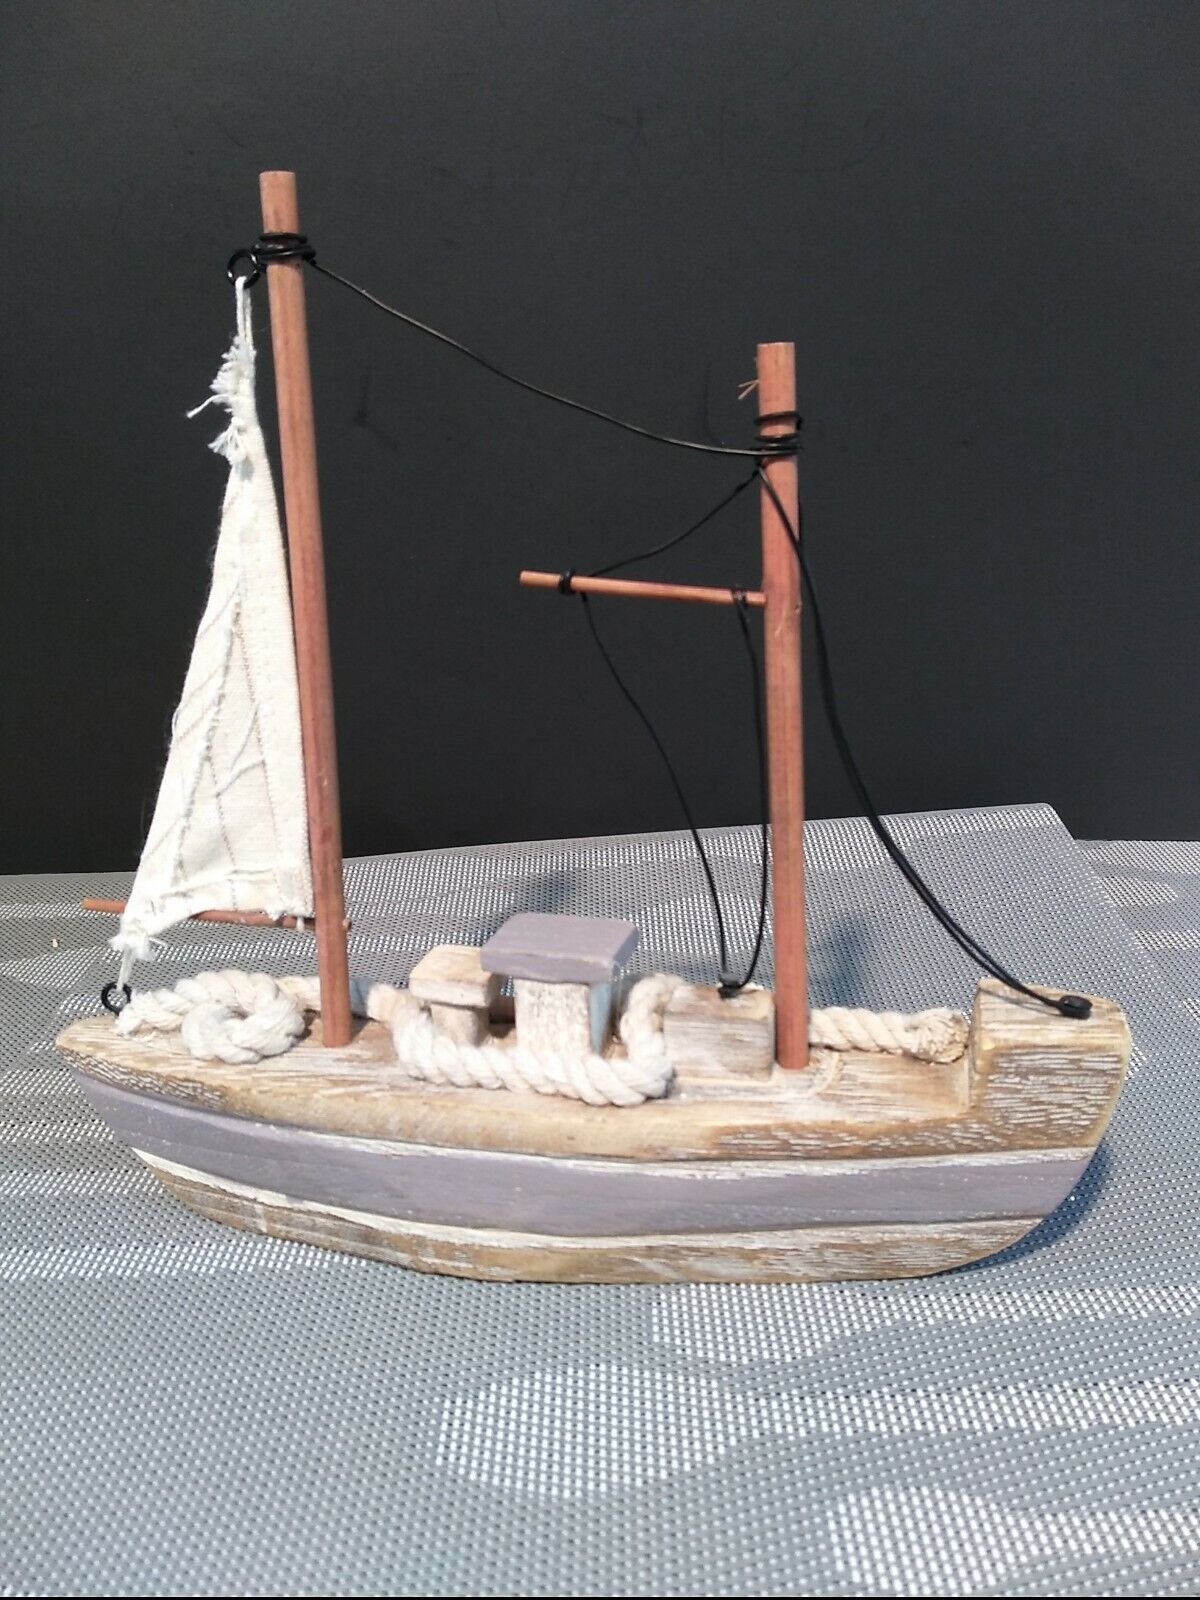 Real Wood Sailboat Decor Real Sea Shells Rope And Cloth Sail 